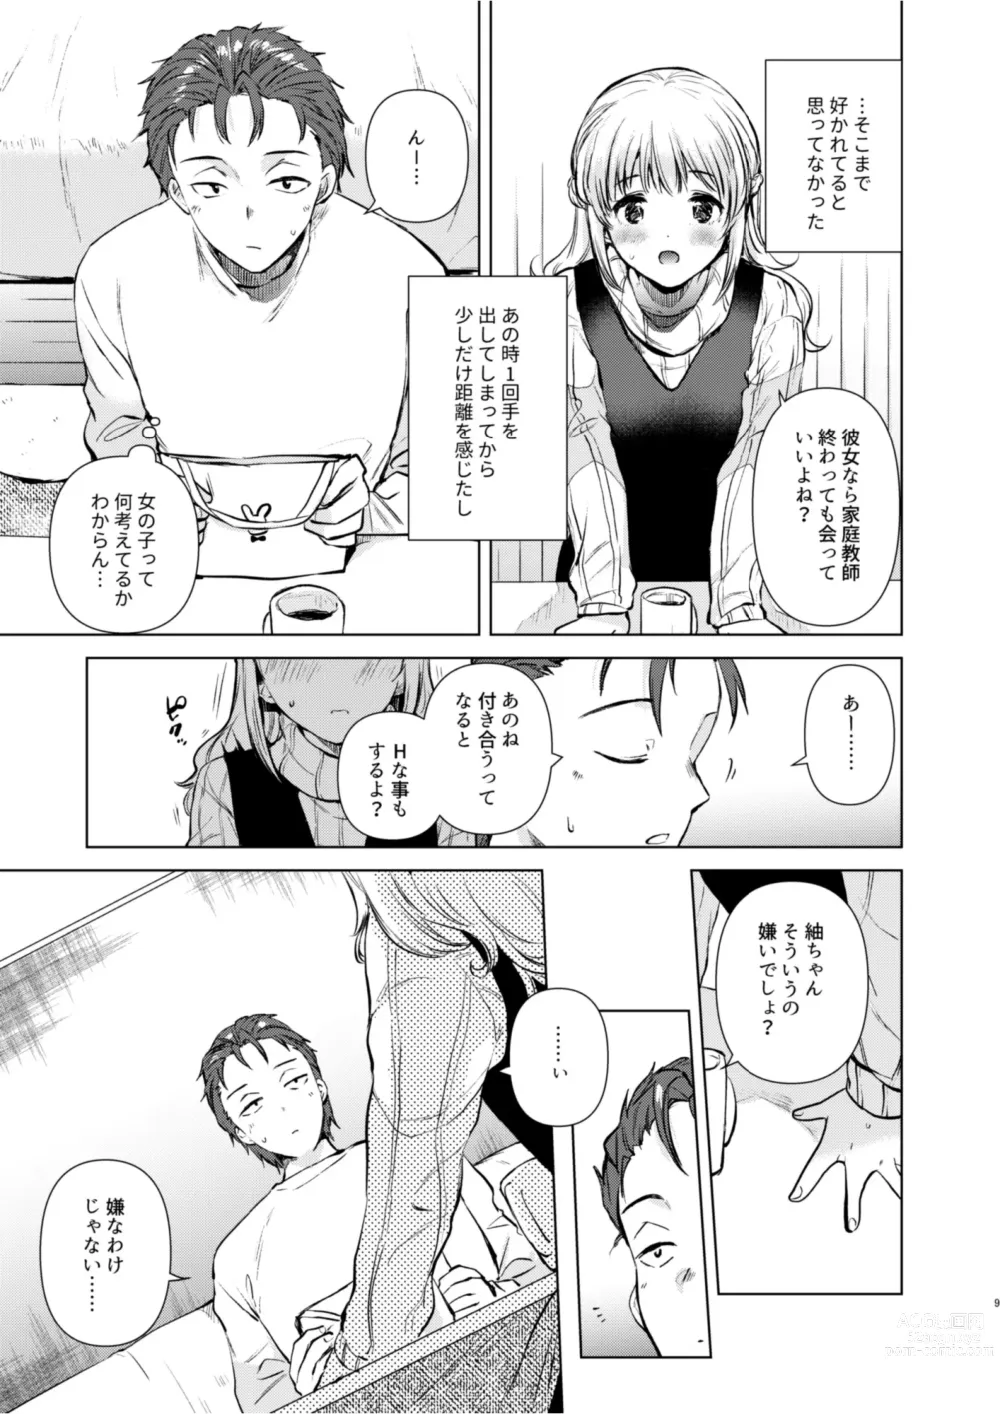 Page 8 of doujinshi Tsumugi-chan no Seichouki